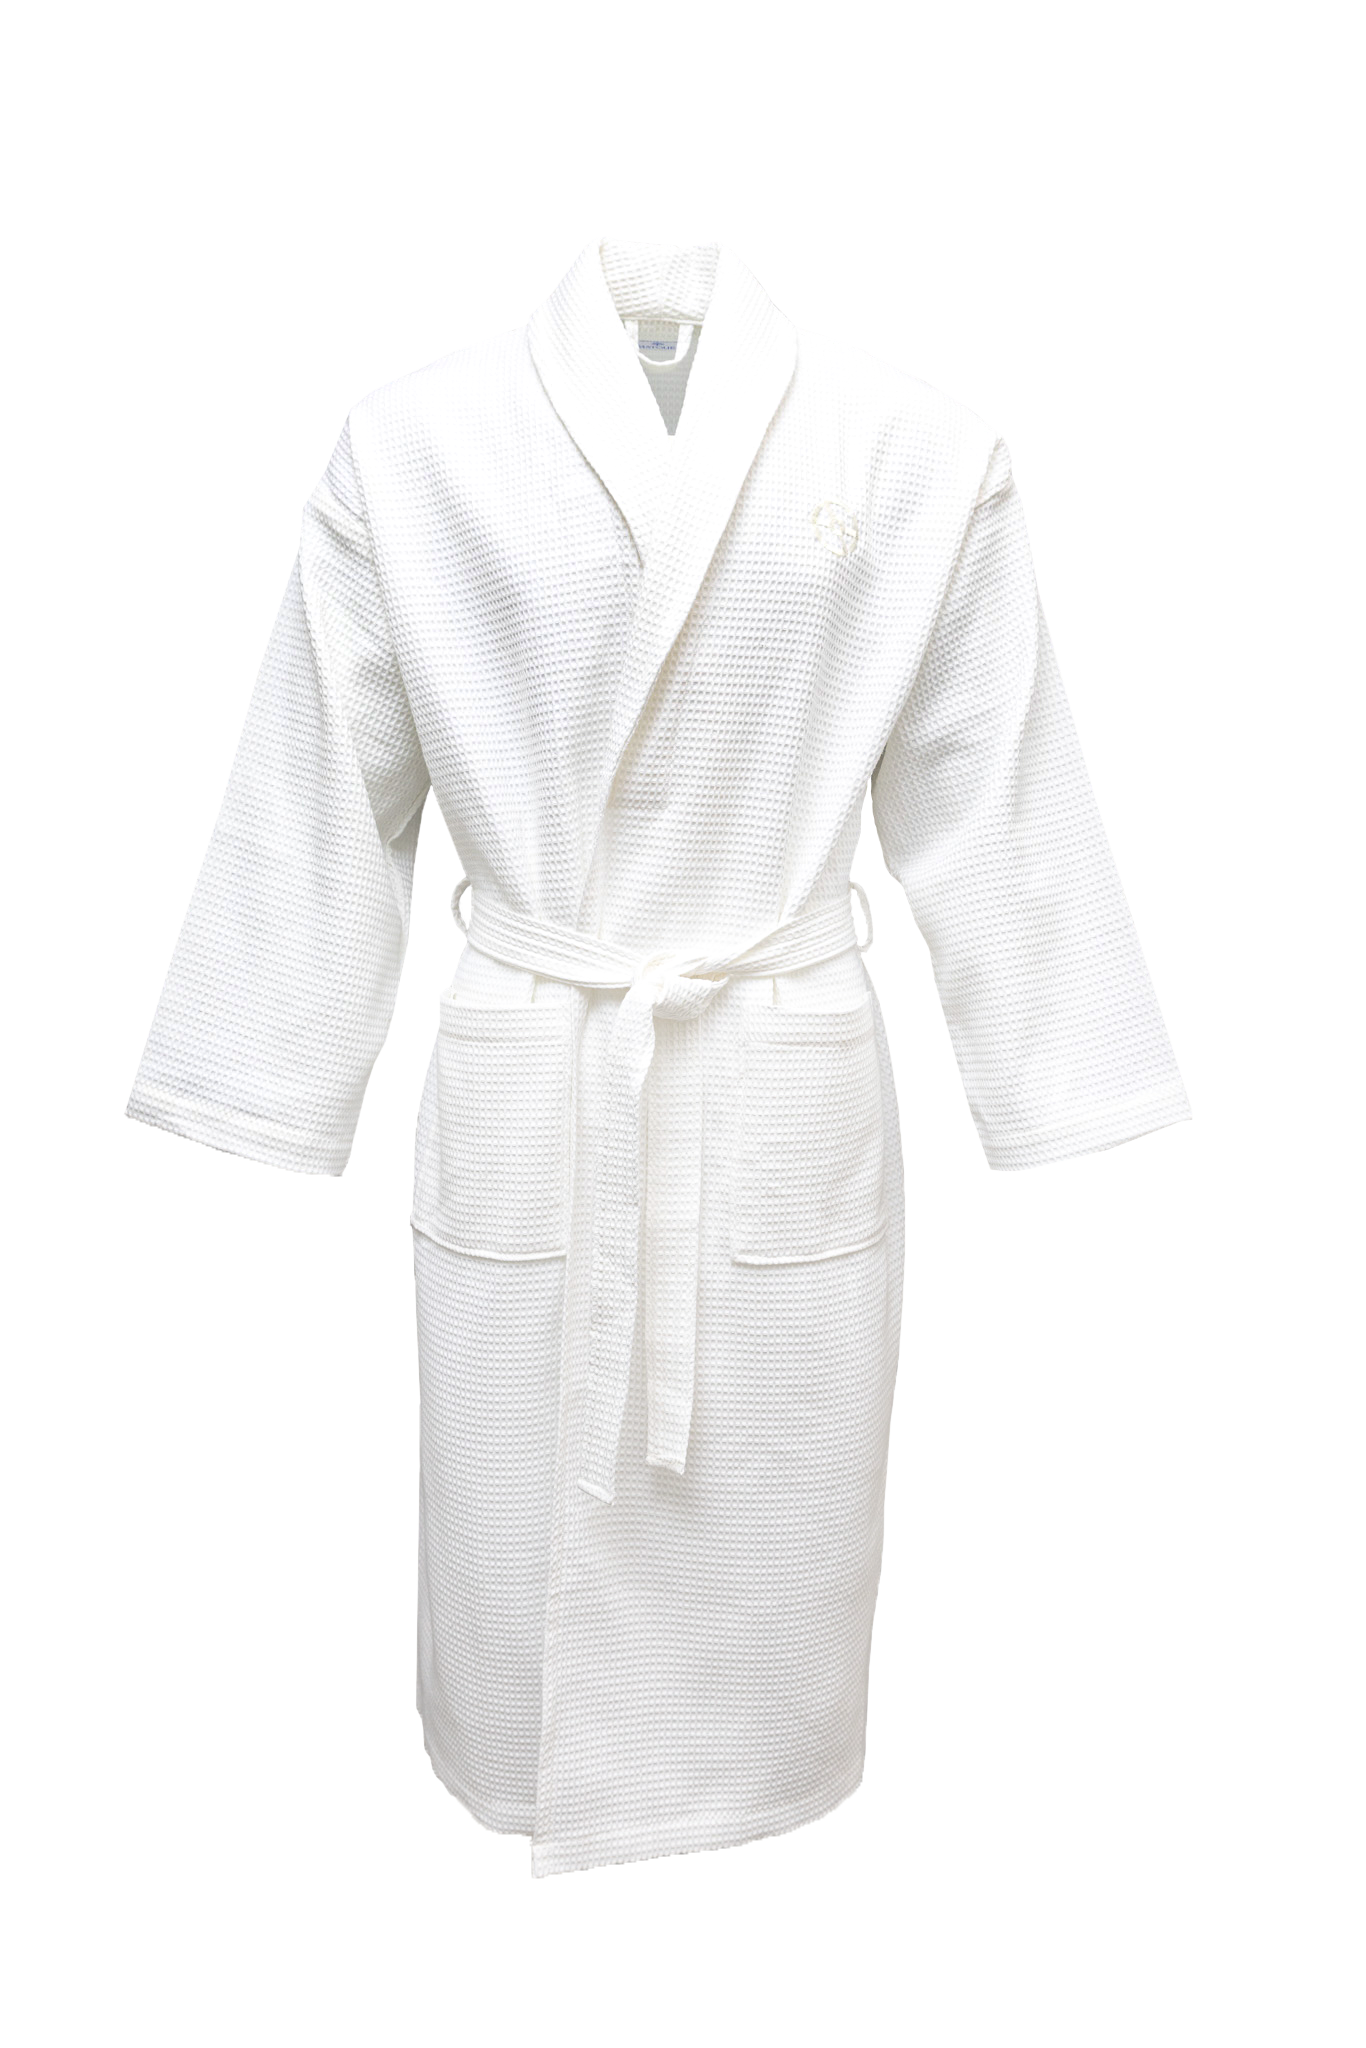 Cotton Kimono Bathrobe Gown Sleepwear | Cotton Waffle Bathrobe Black -  Cotton Men - Aliexpress